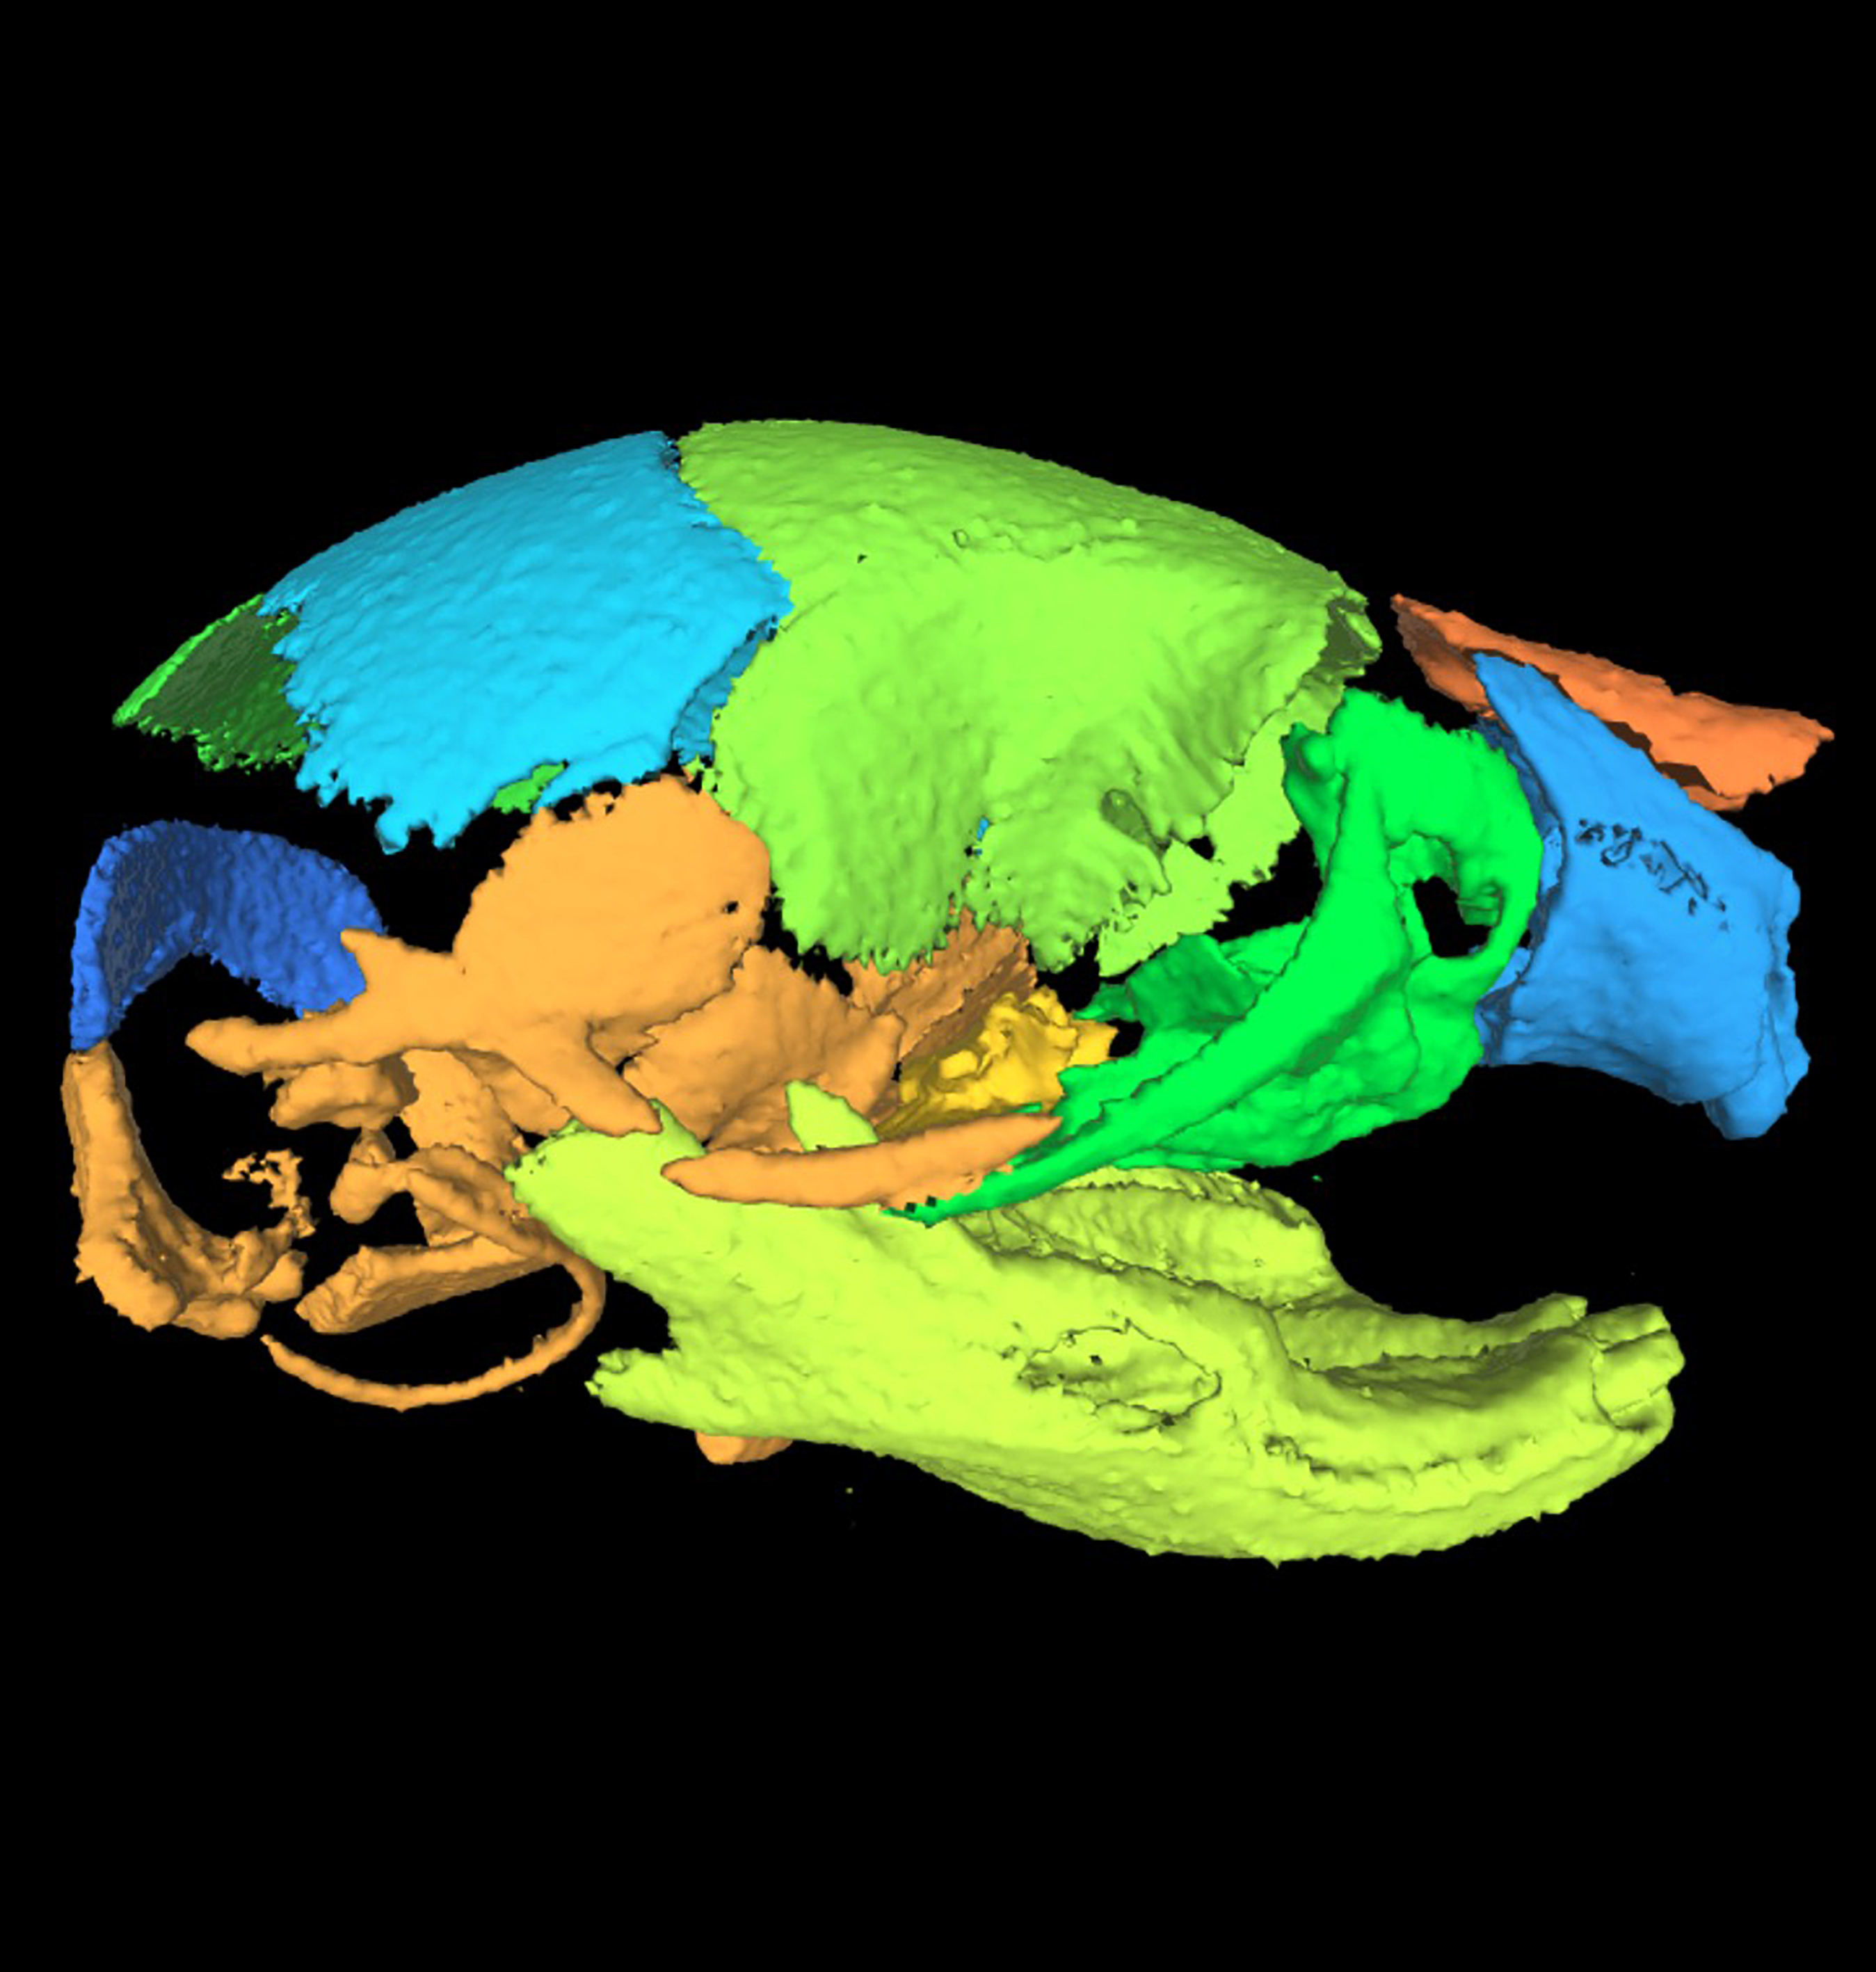 mouse skull 3-D model